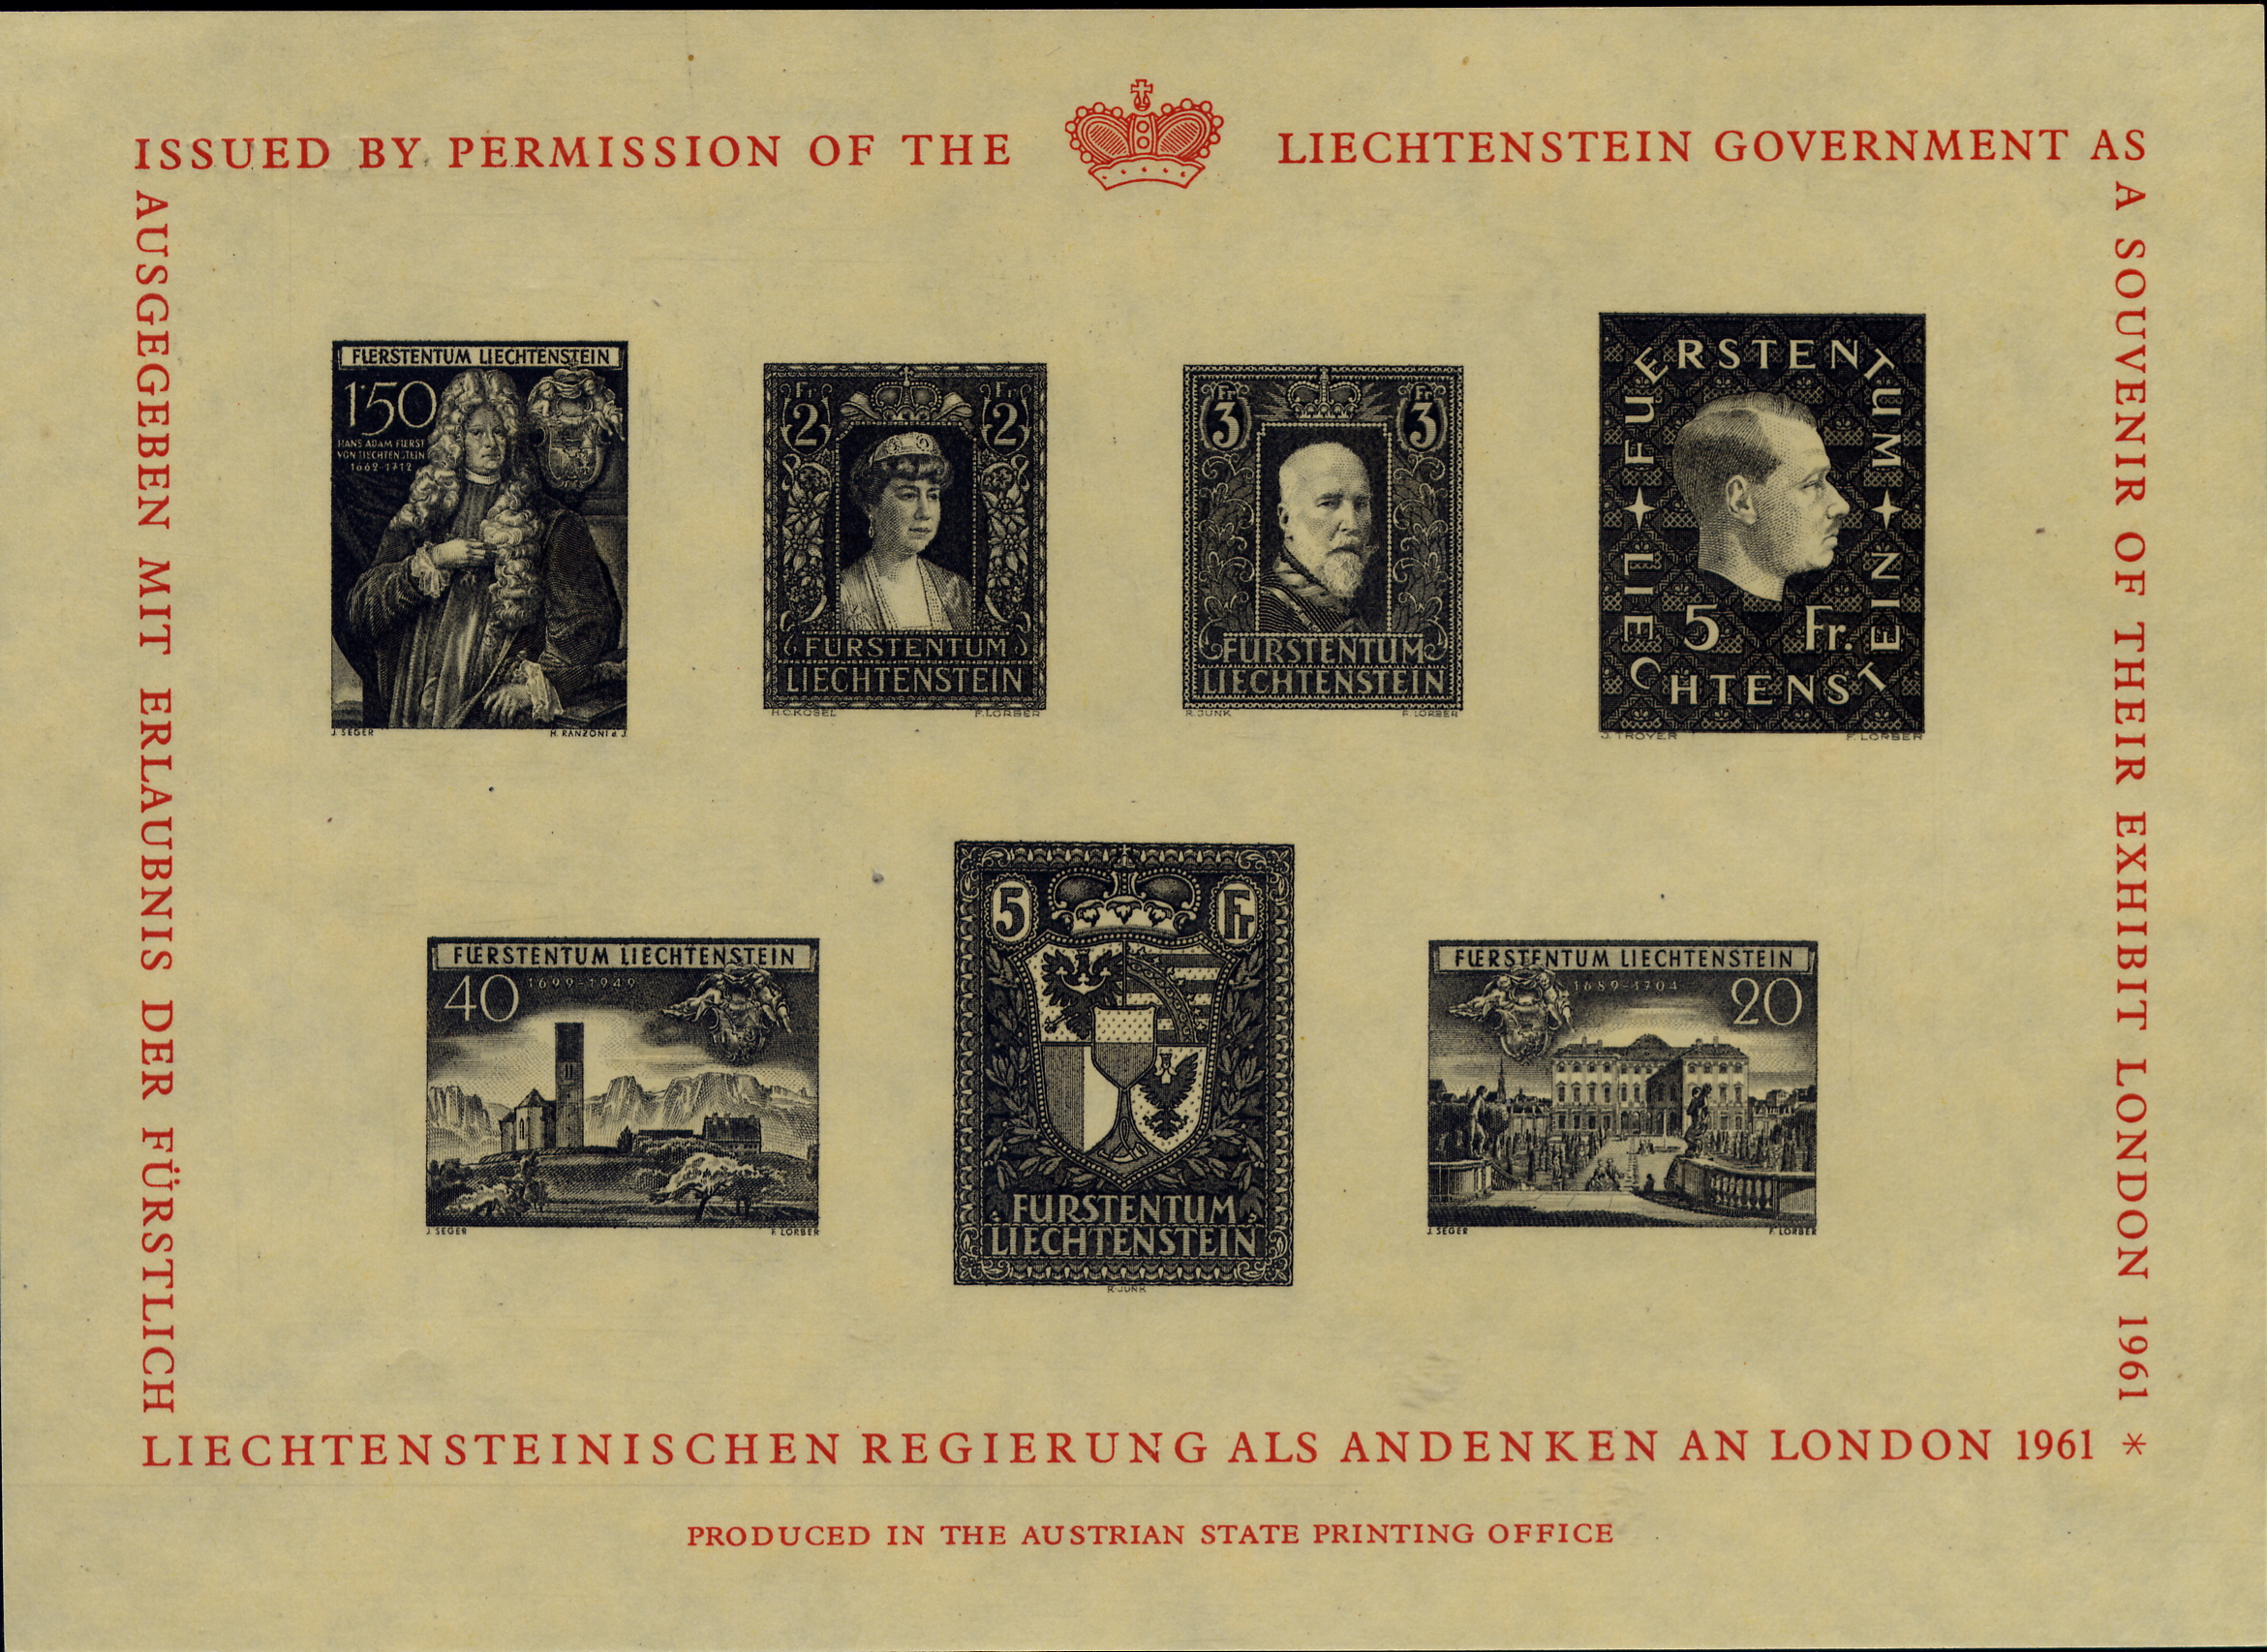 https://swiss-stamps.org/wp-content/uploads/2023/12/1961-London-Souvenir-Sheet-2.jpg